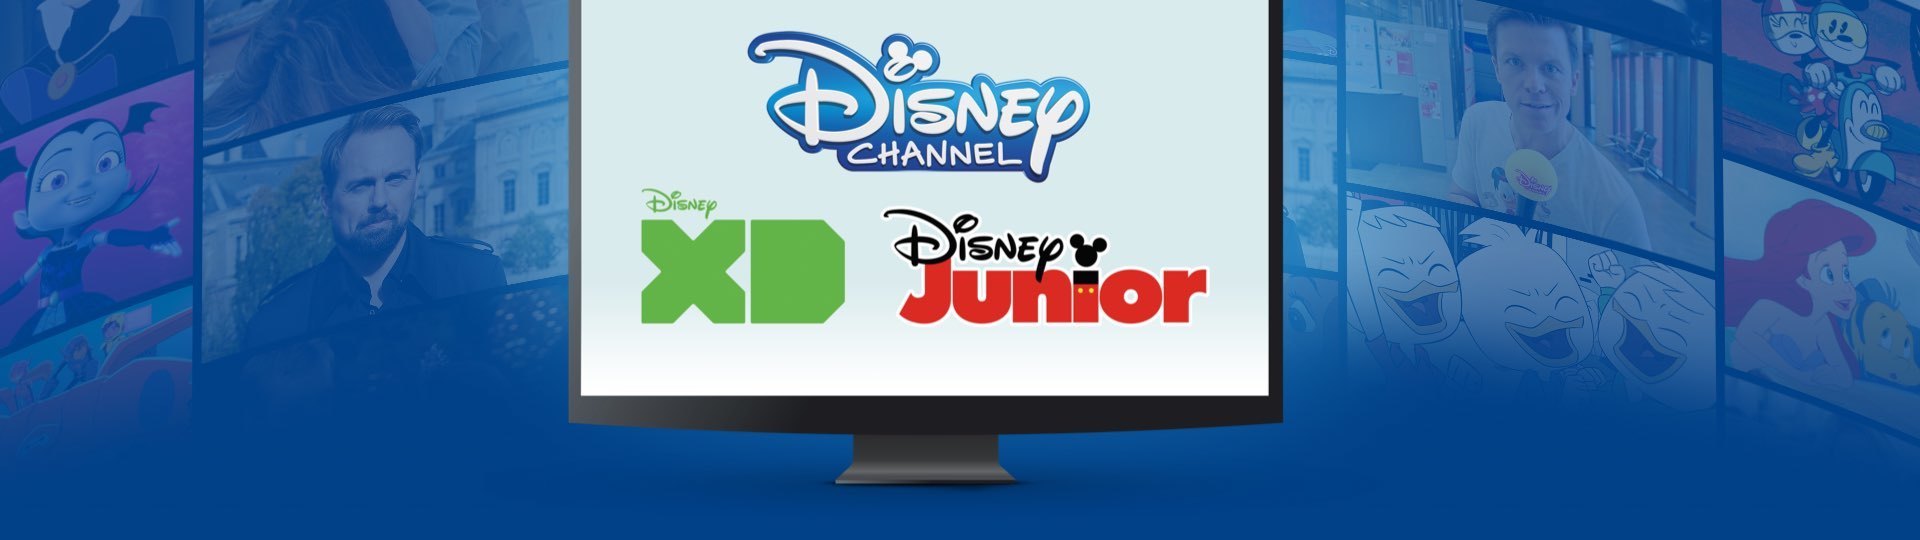 Logos von Disney Channel, Disney XD und Disney Junior auf einem Bildschirm, Szenen von Disney-Shows im Hintergrund